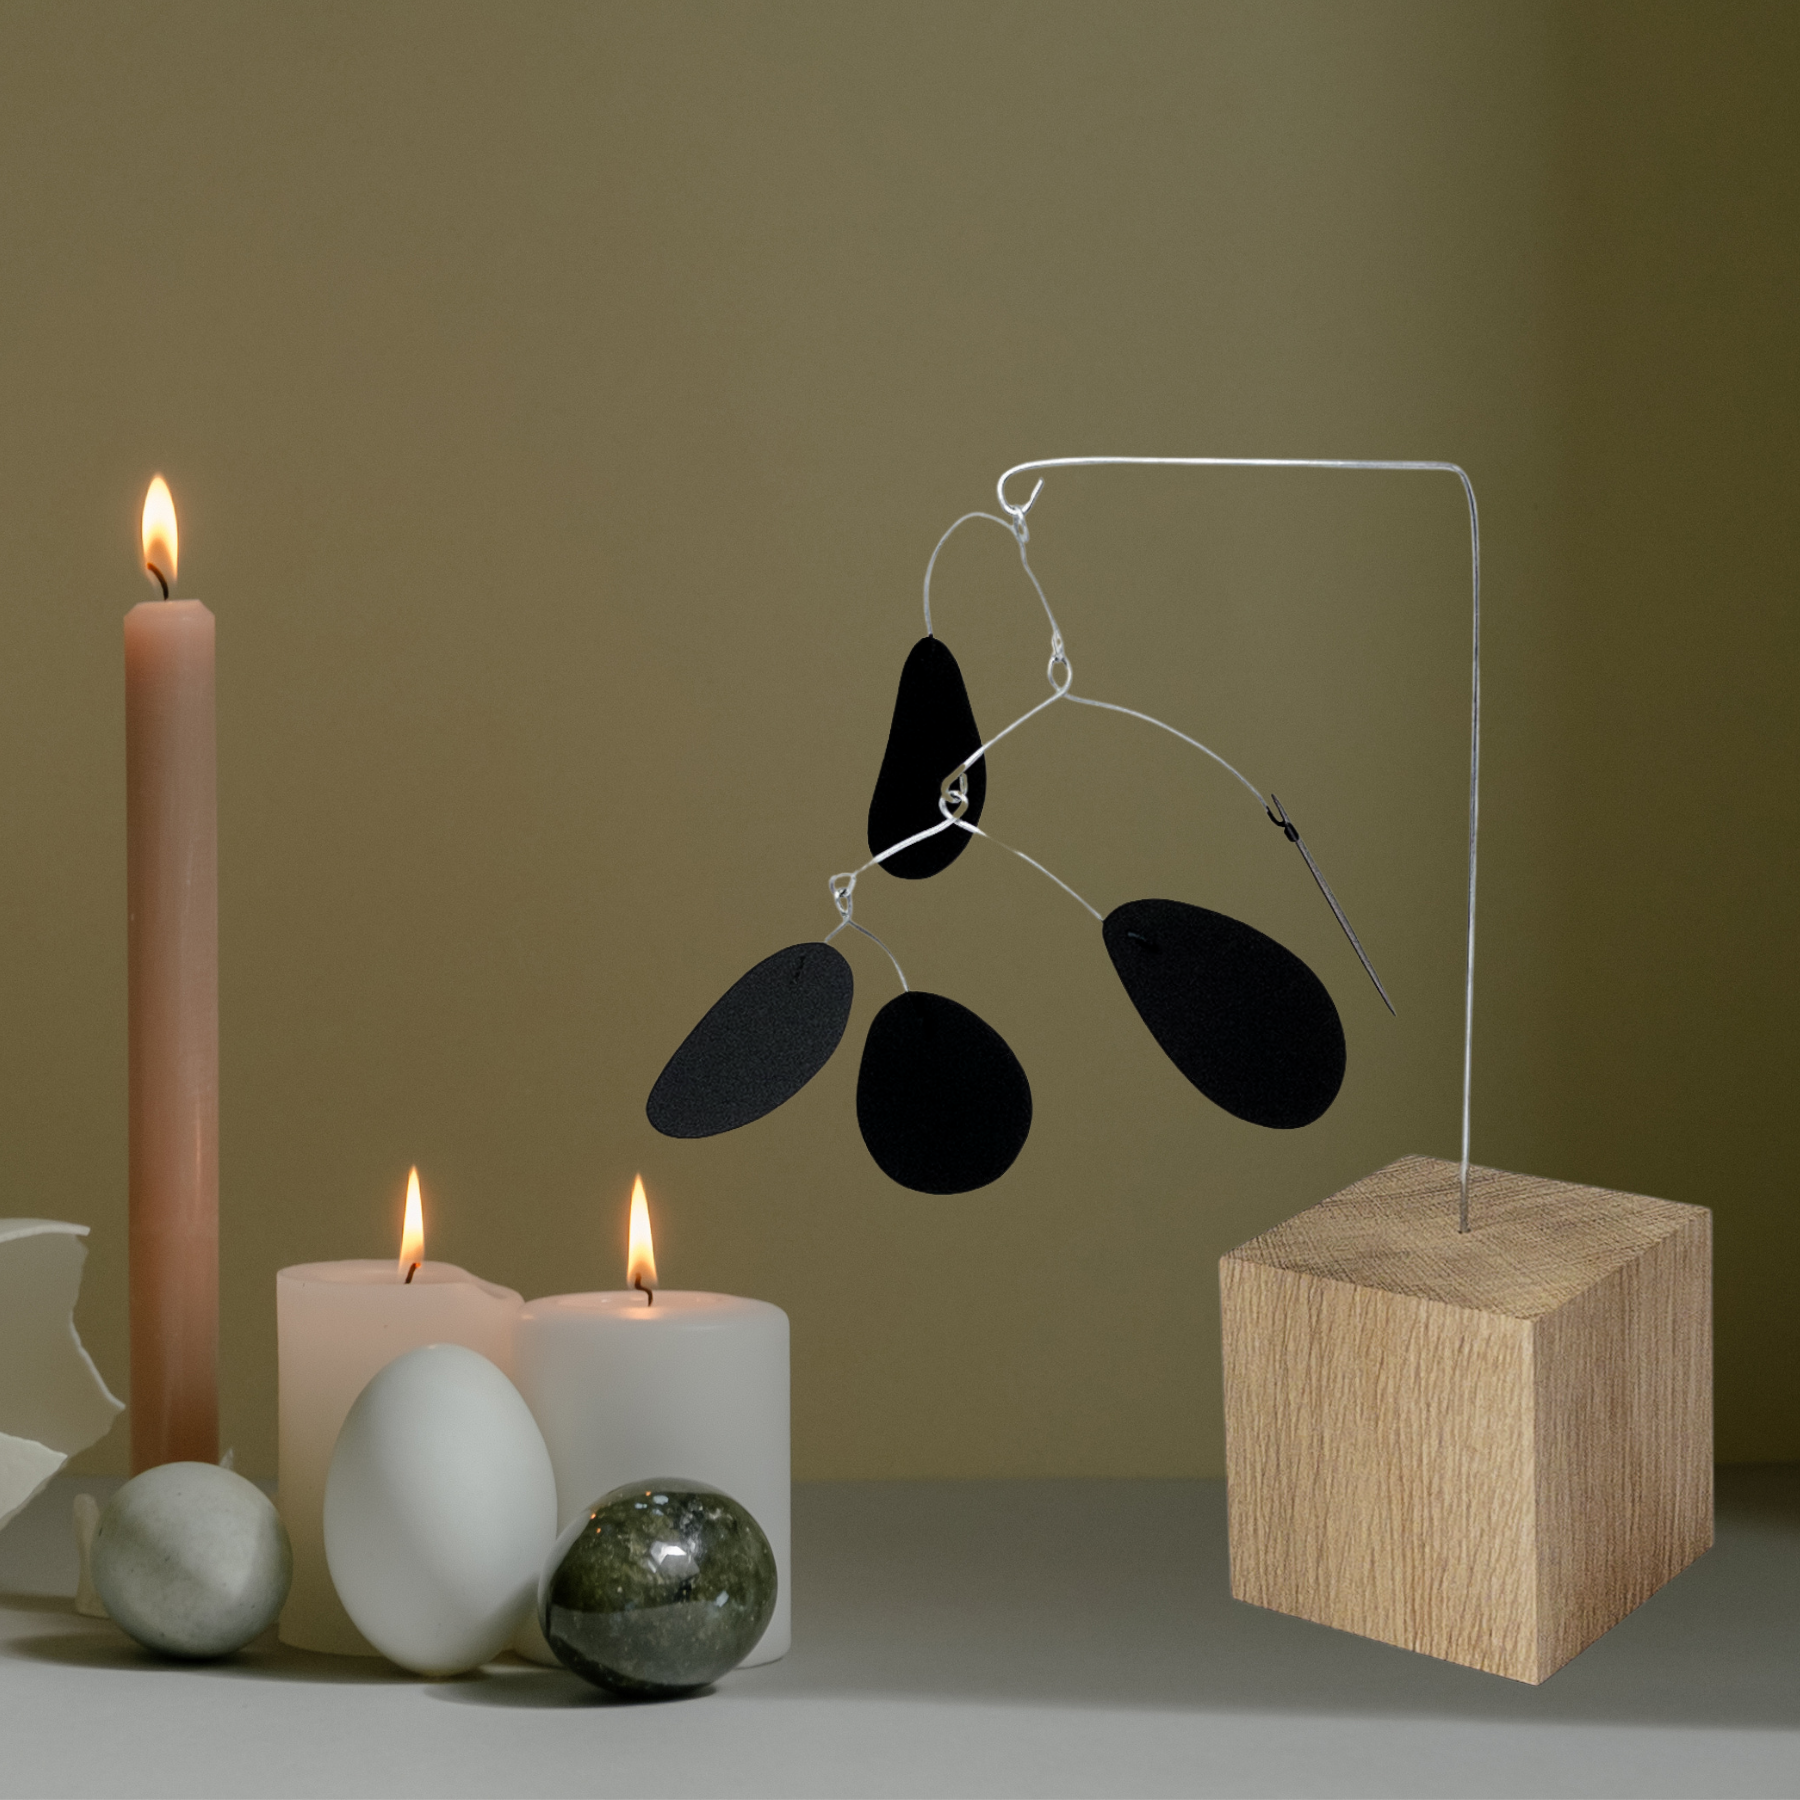 Stabile mobile en métal avec petale noirs et cube en bois de chêne. Décor minimaliste moderne